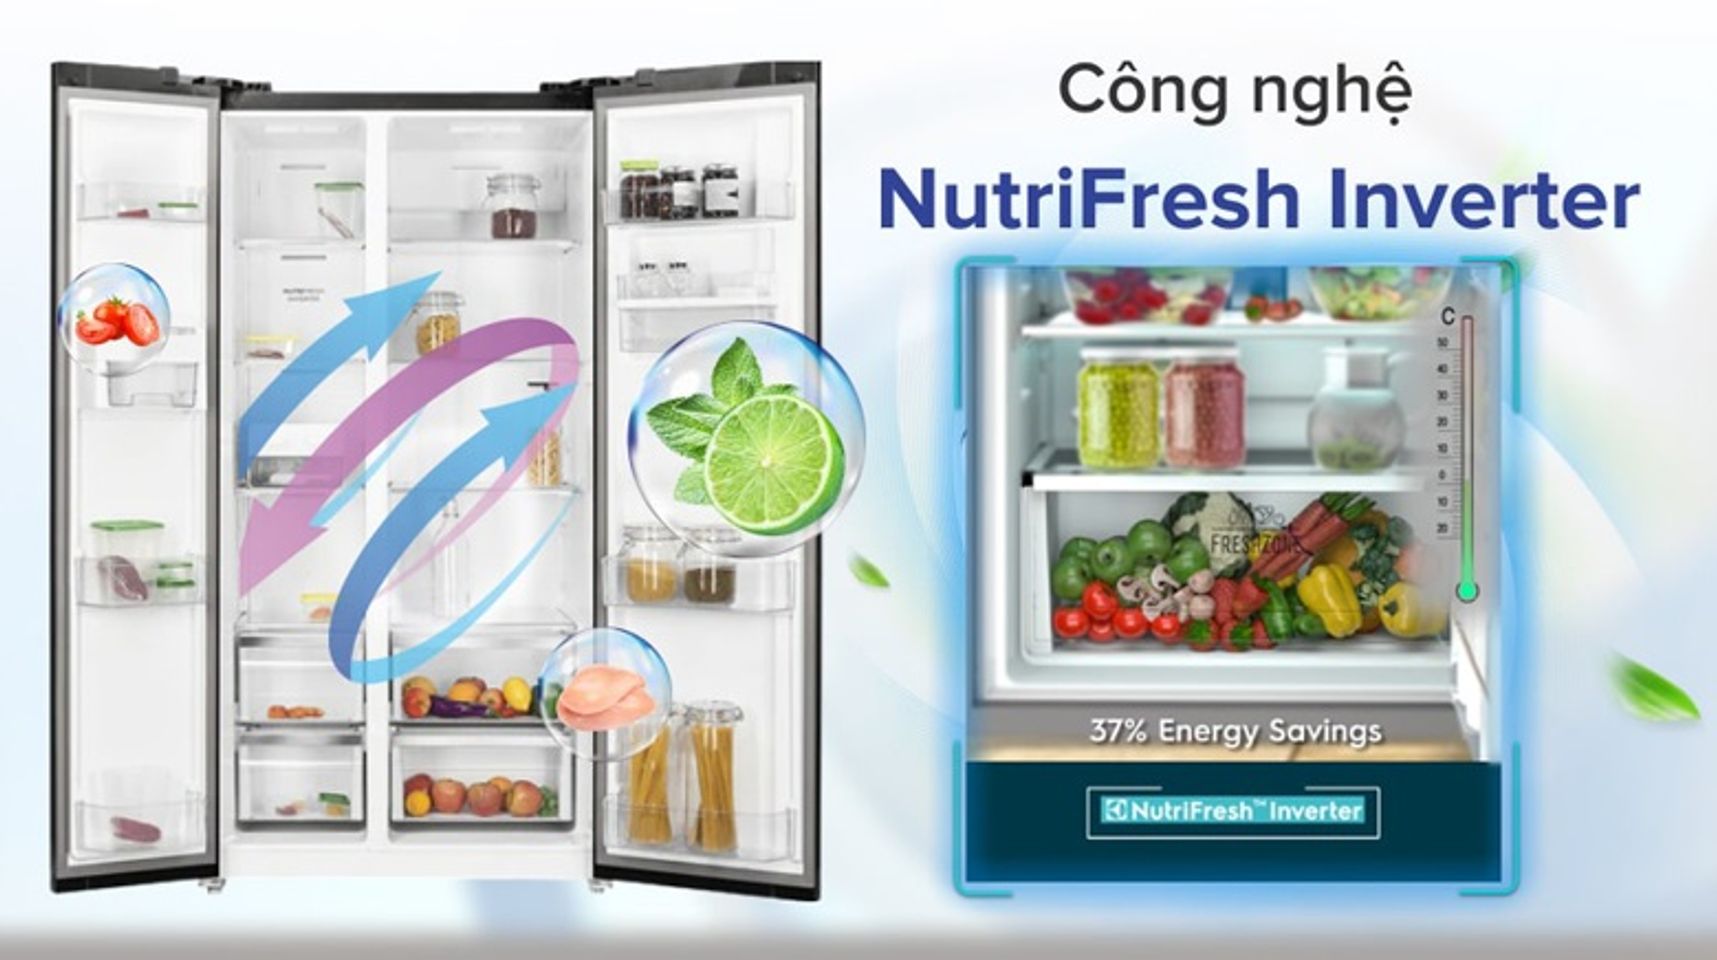 Tủ lạnh side by side Electrolux - Tiết kiệm điện năng hiện quả cùng công nghệ NutriFresh Inverter